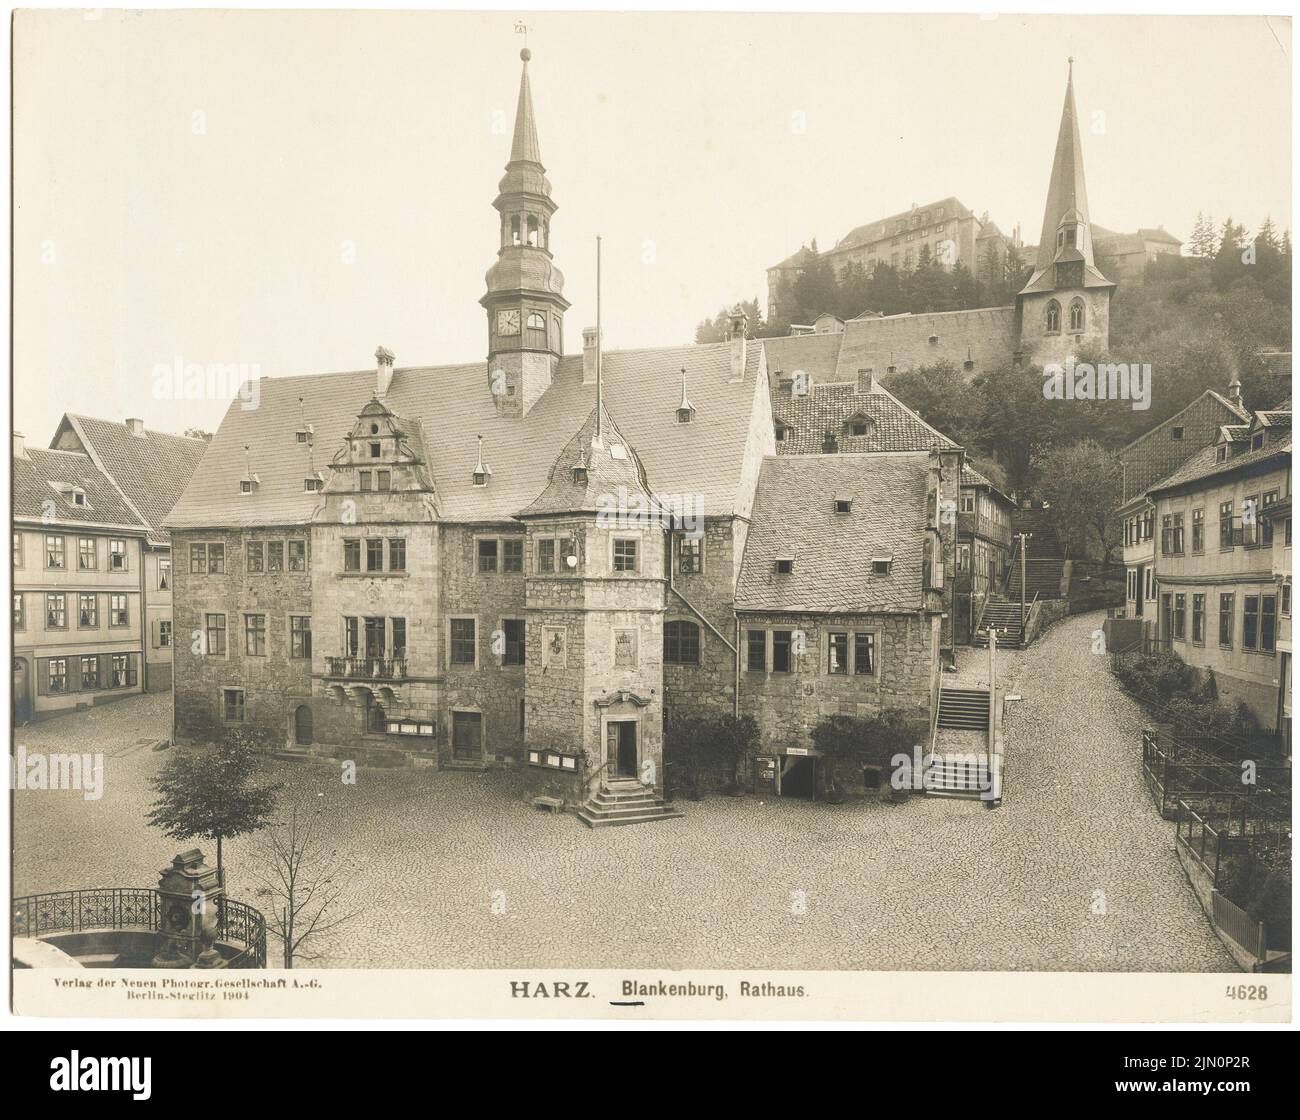 Nouvelle société photographique (NPG), hôtel de ville de Blankenburg (1904) : vue de face du marché avec un château. Photo, 19,5 x 24,6 cm (y compris les bords de numérisation) Neue Photographische Gesellschaft (NPG): Rathaus in Blankenburg (1904) Banque D'Images